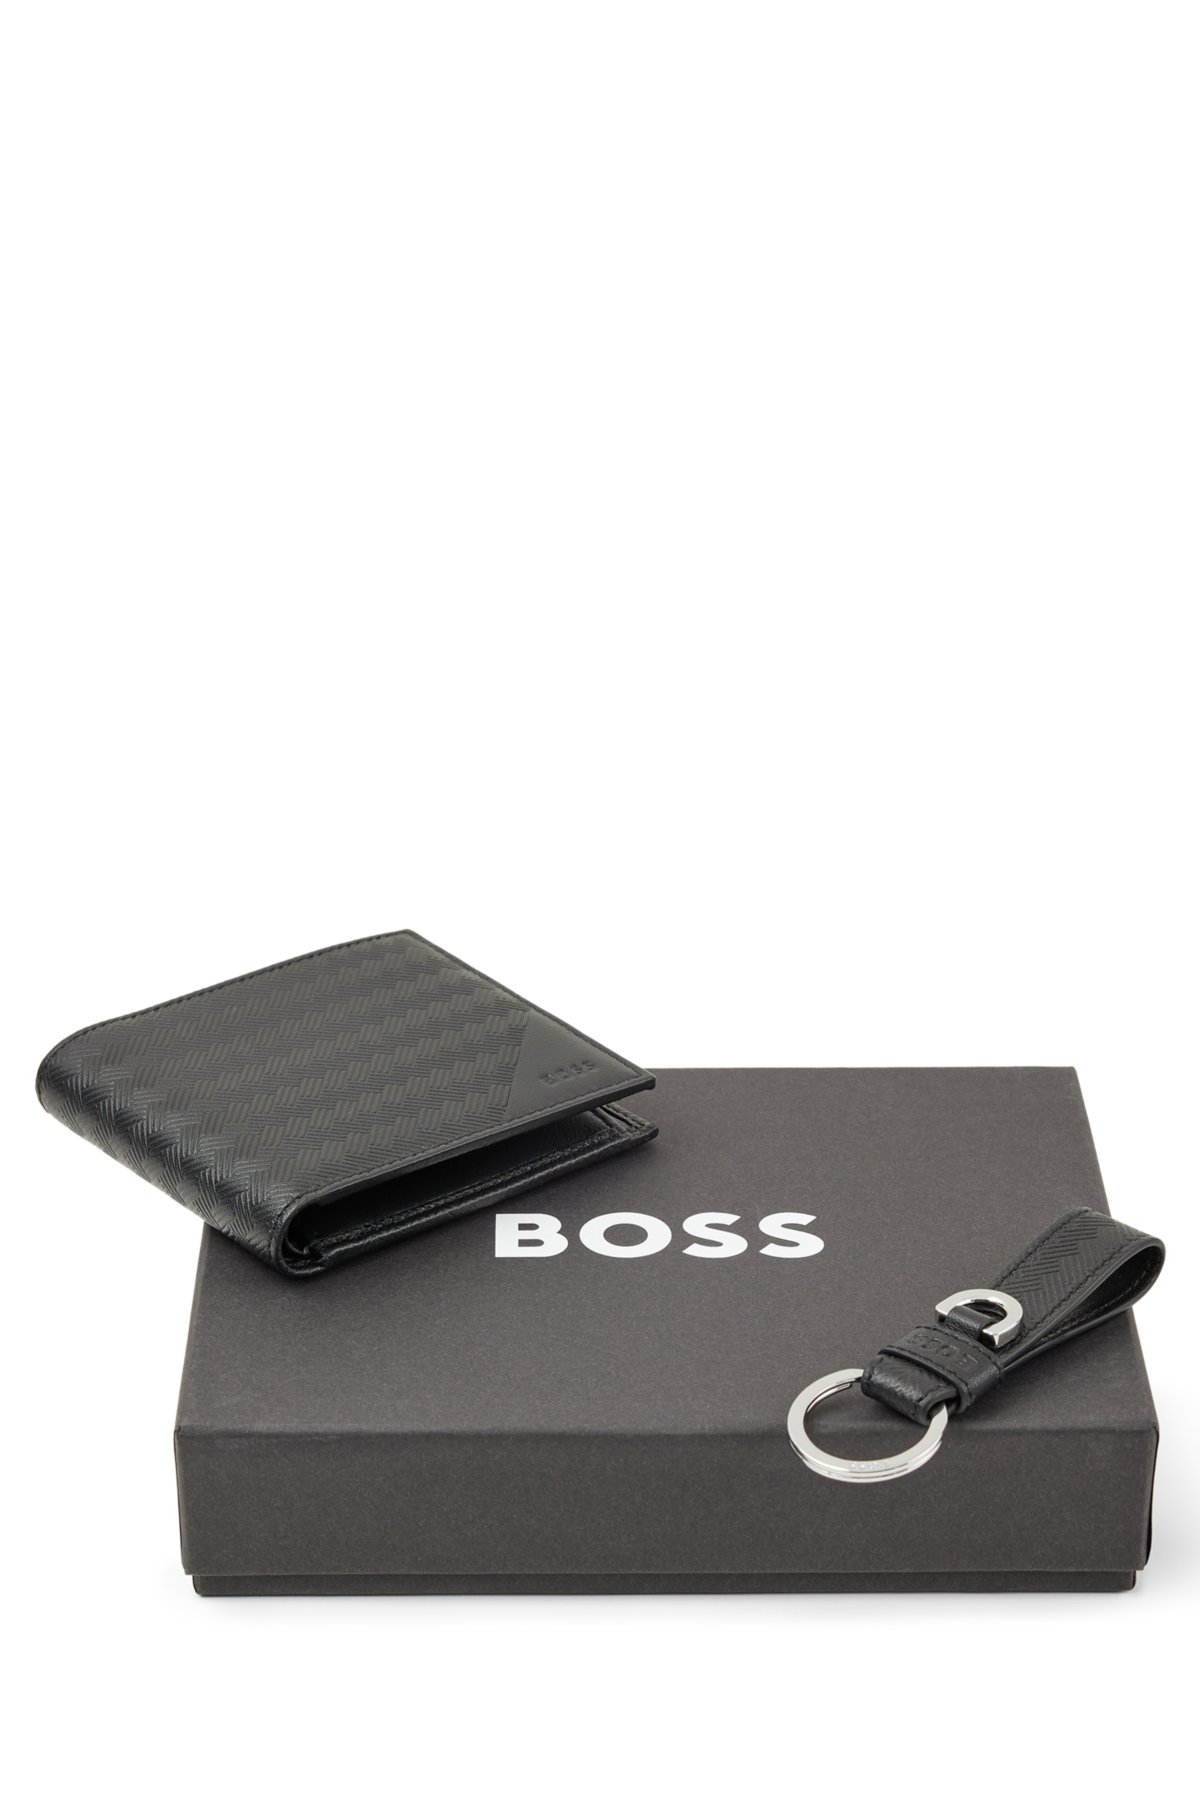 BOSS - Coffret cadeau avec portefeuille et porte-clés en cuir embossé